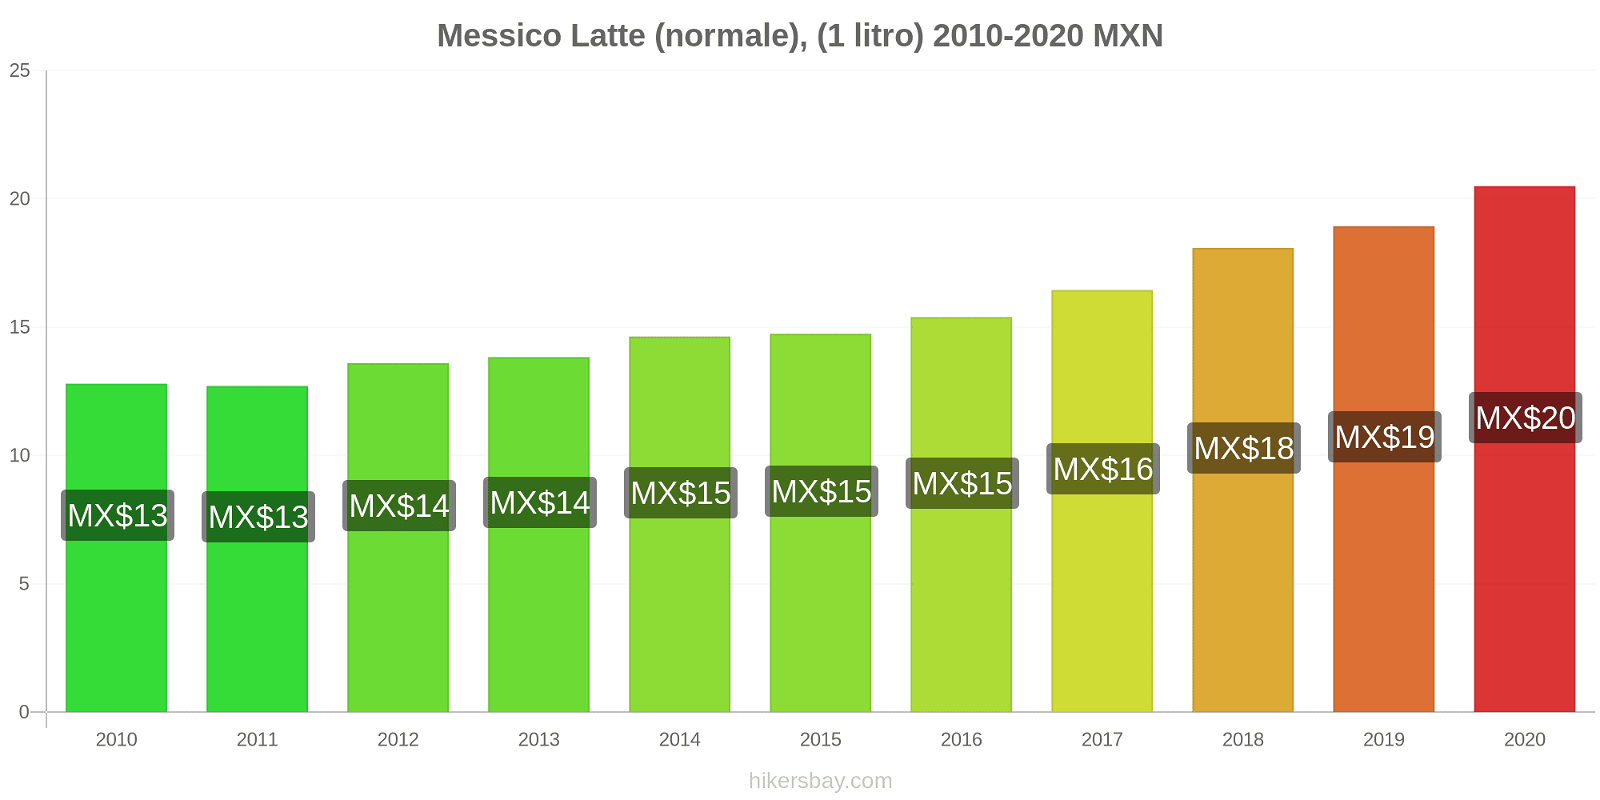 Messico variazioni di prezzo Latte (1 litro) hikersbay.com